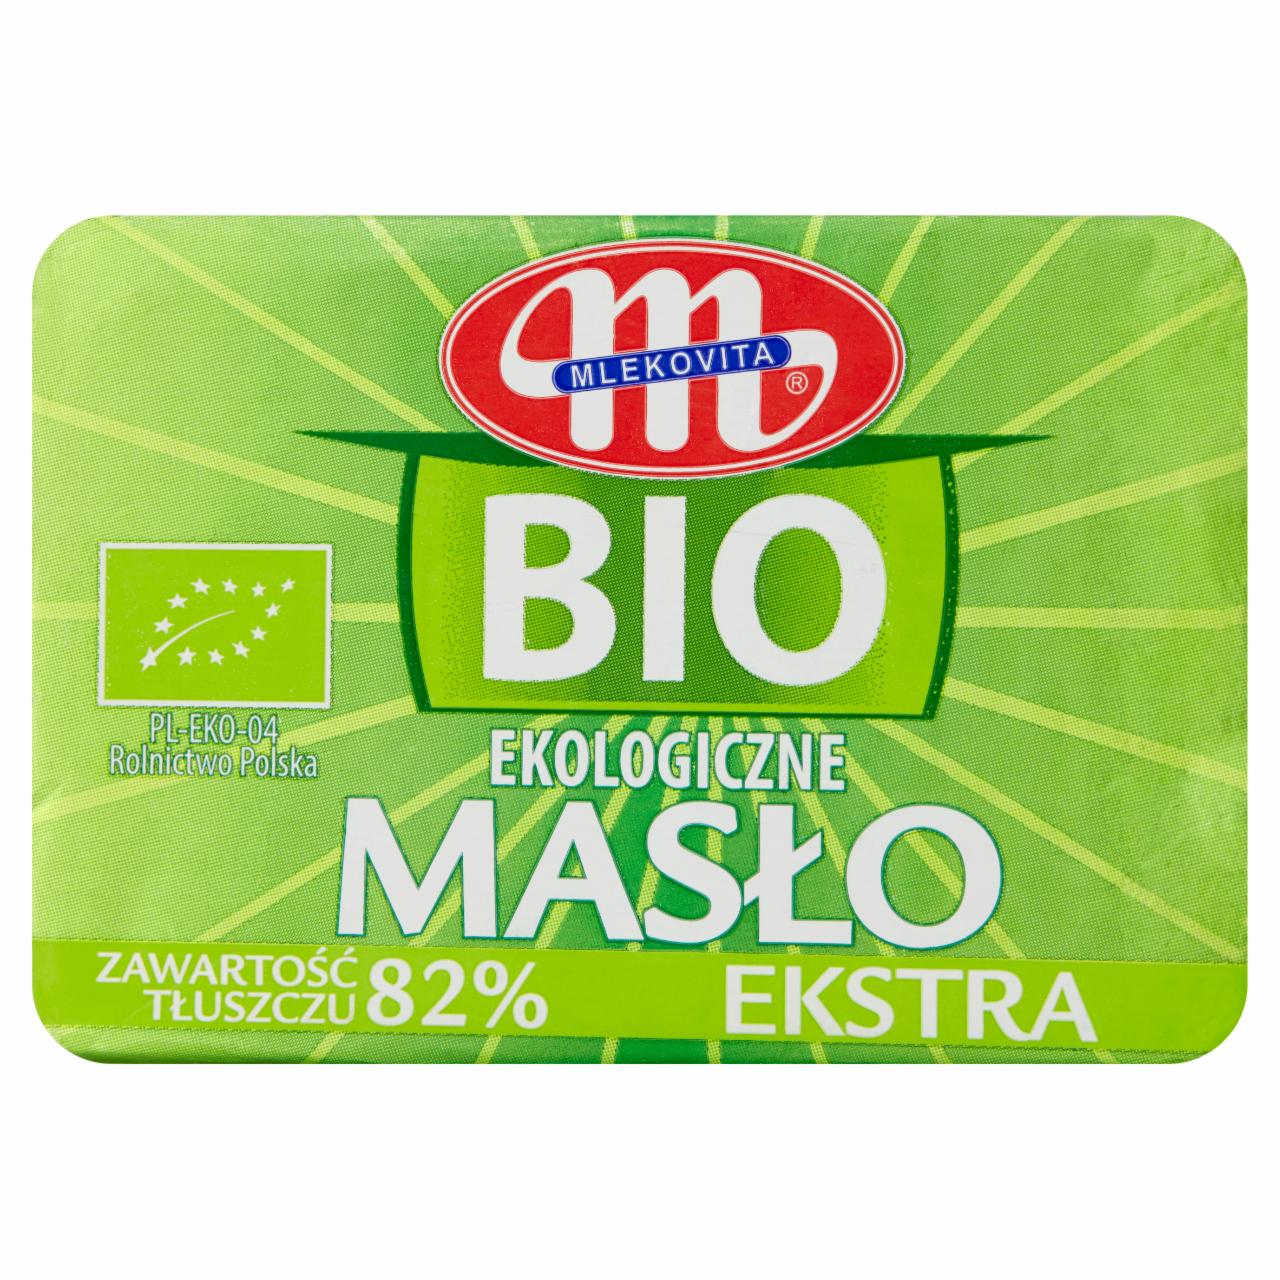 Zdjęcia - Mlekovita BIO Ekologiczne masło ekstra 100 g